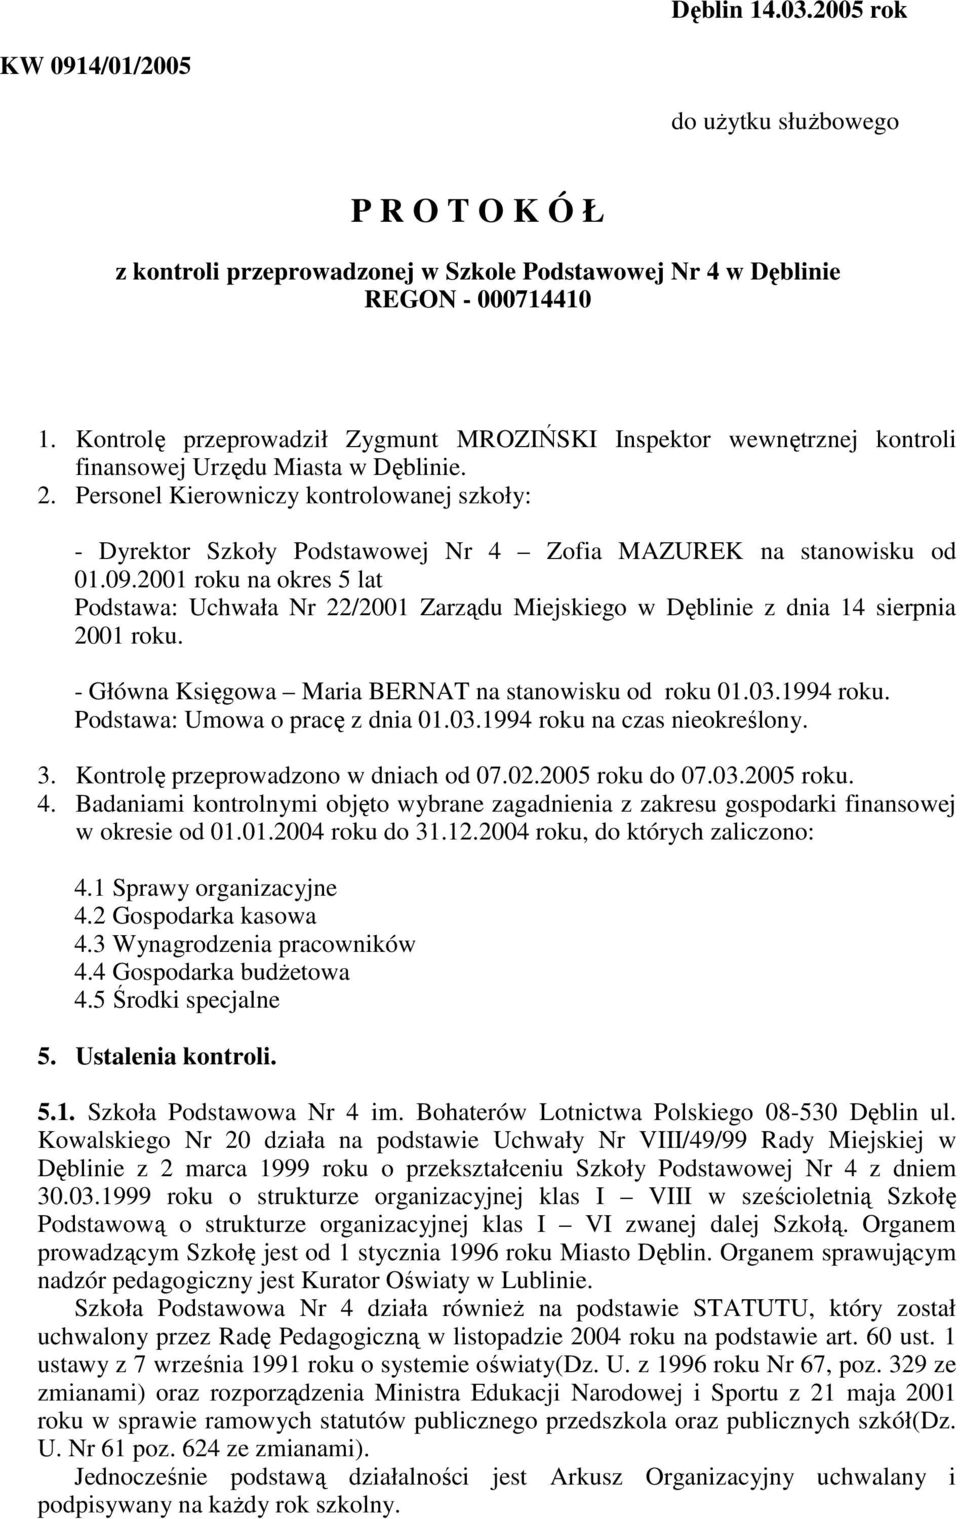 Personel Kierowniczy kontrolowanej szkoły: - Dyrektor Szkoły Podstawowej Nr 4 Zofia MAZUREK na stanowisku od 01.09.